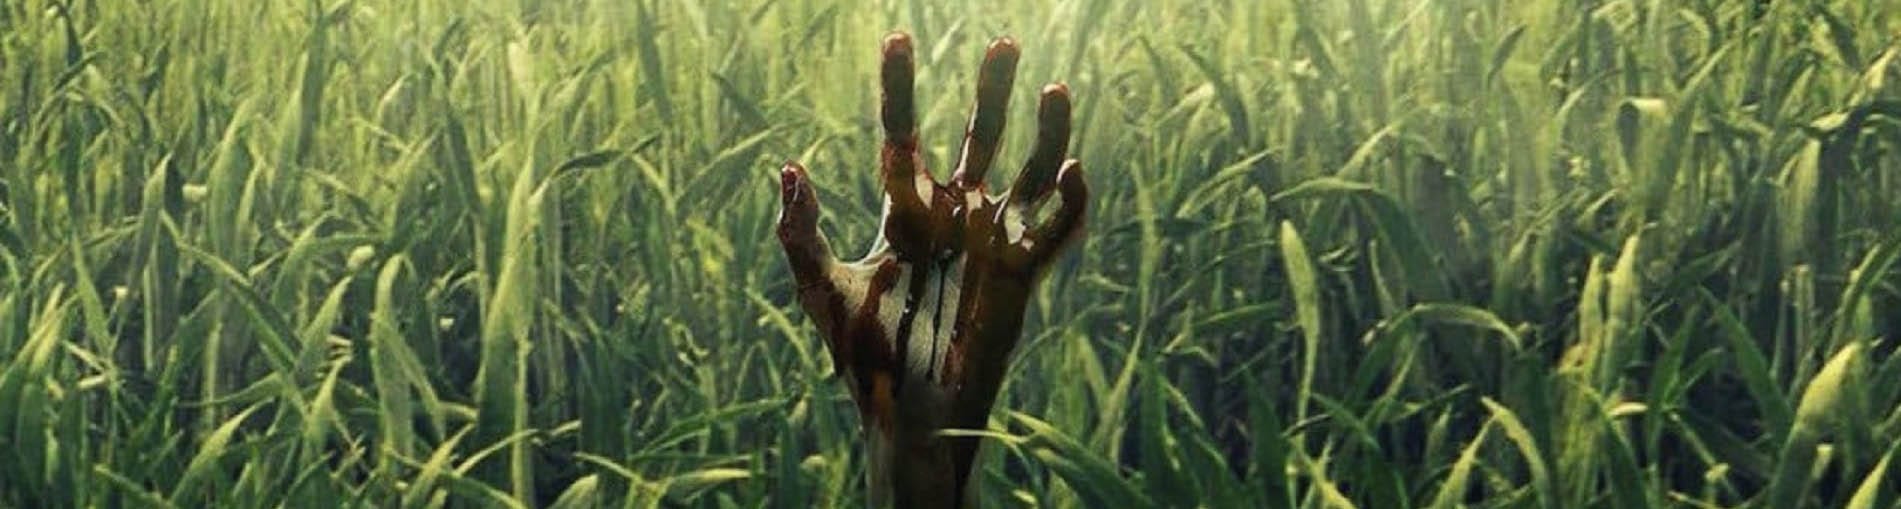 En la hierba alta – Crítica de cine